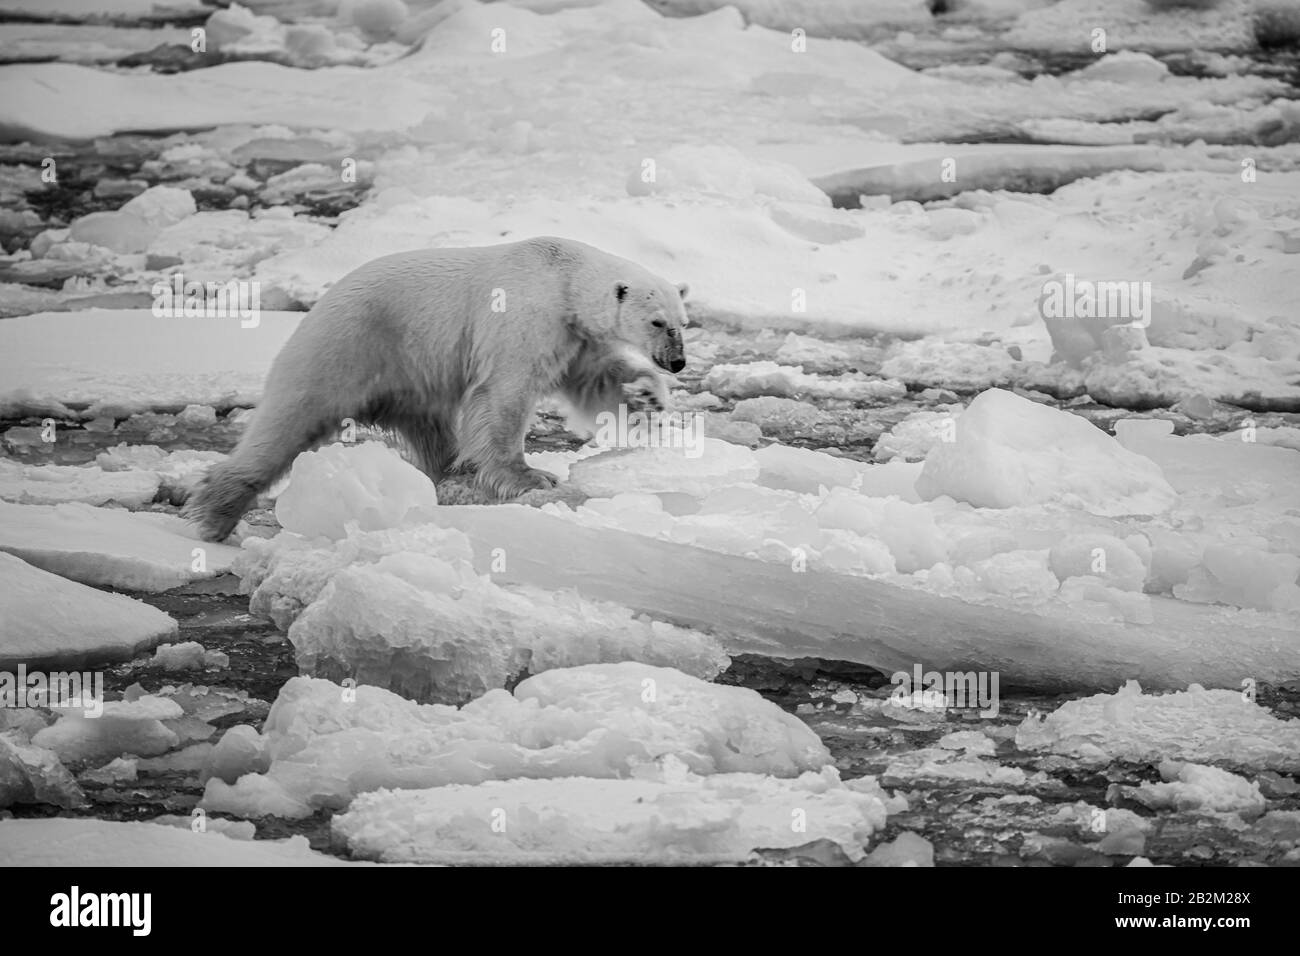 Grand ours polaire sur la glace flottante dans l'arctique. Svalbard, Norvège Banque D'Images